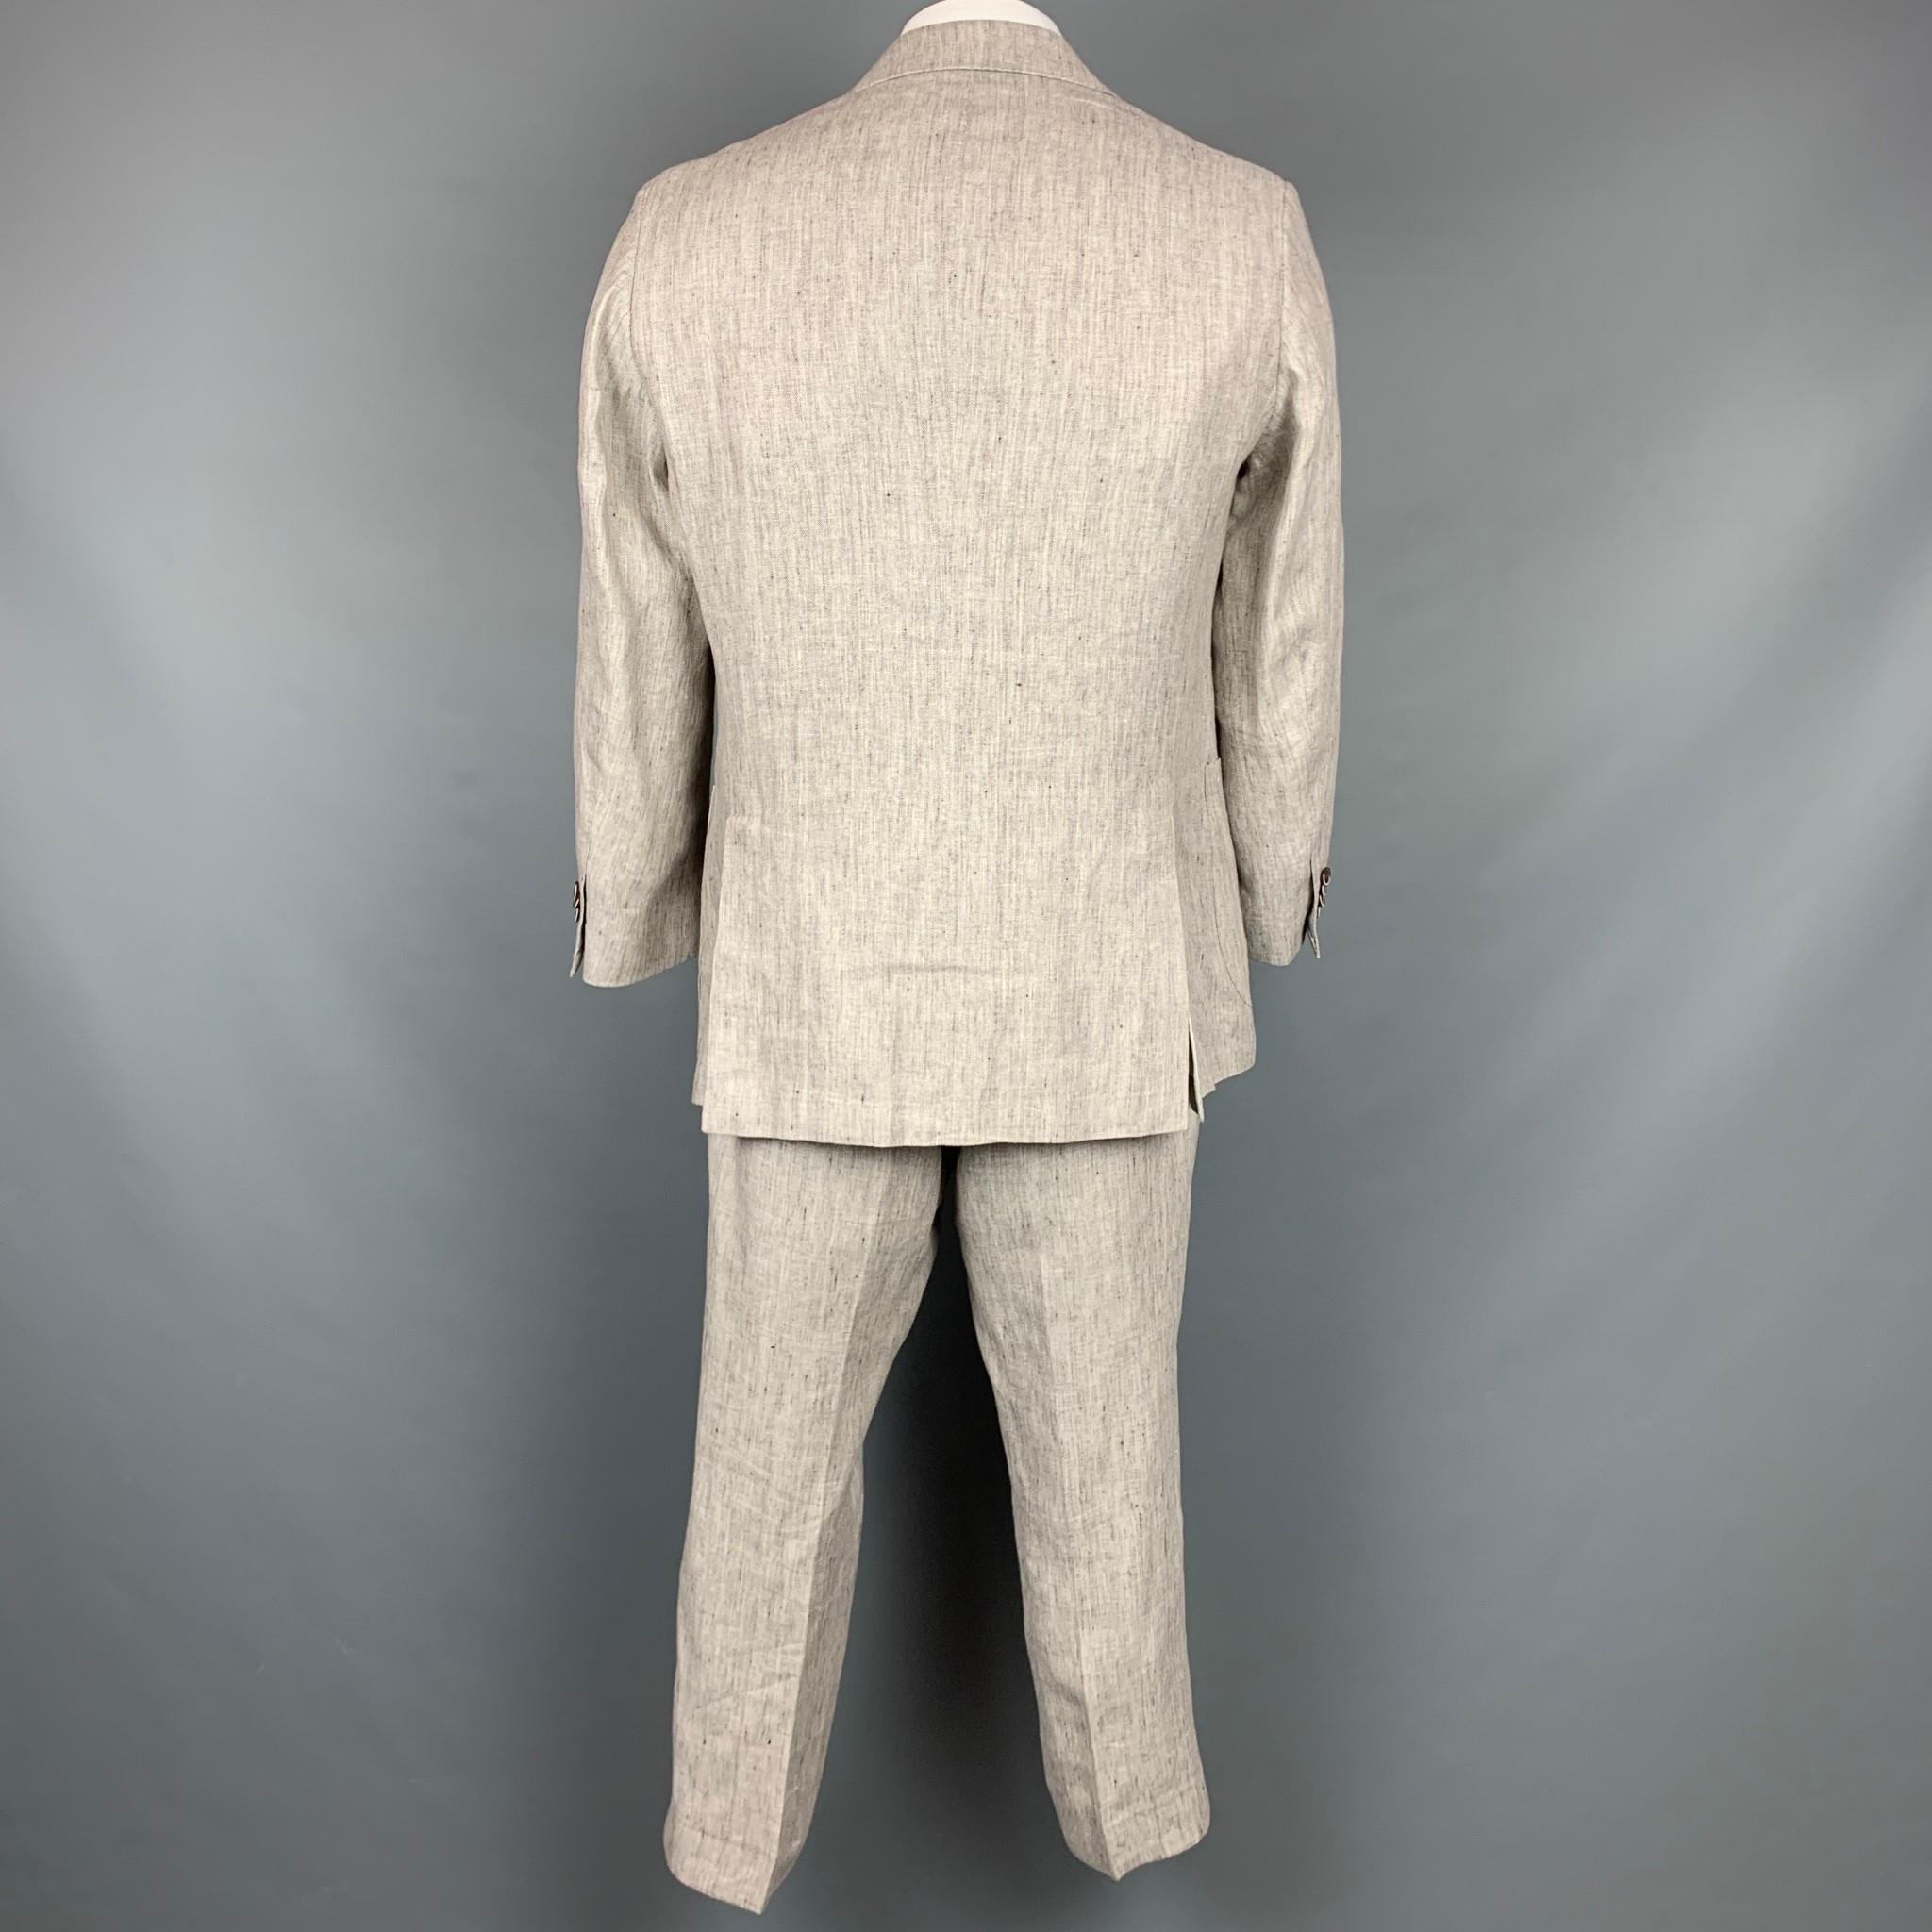 oatmeal linen suit